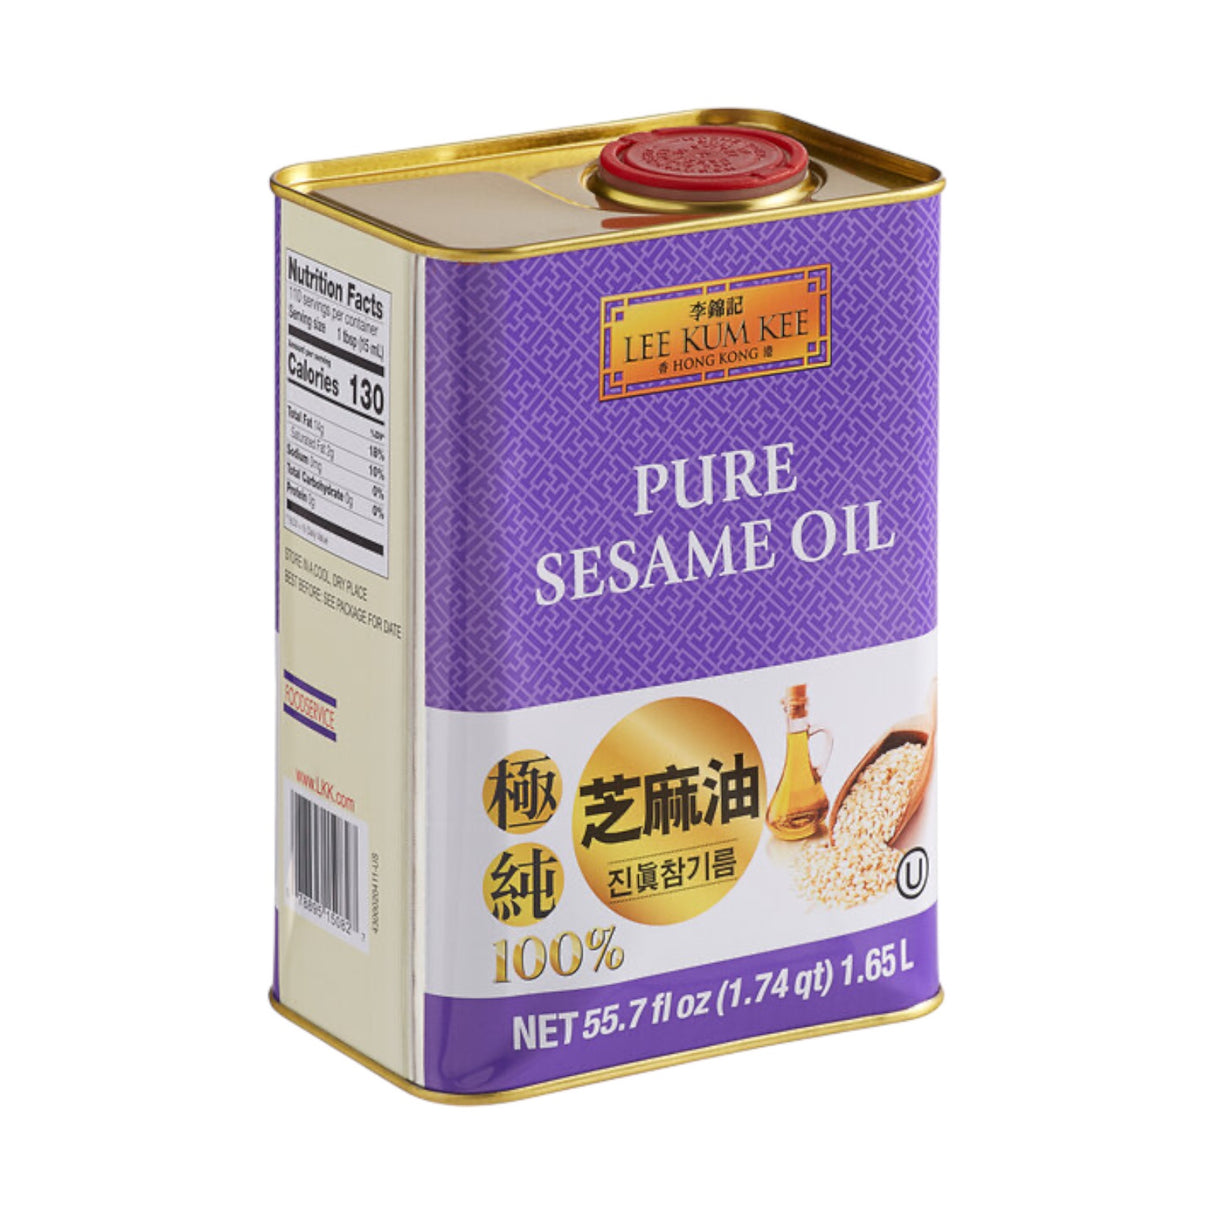 Lee Kum Kee Pure Sesame Oil